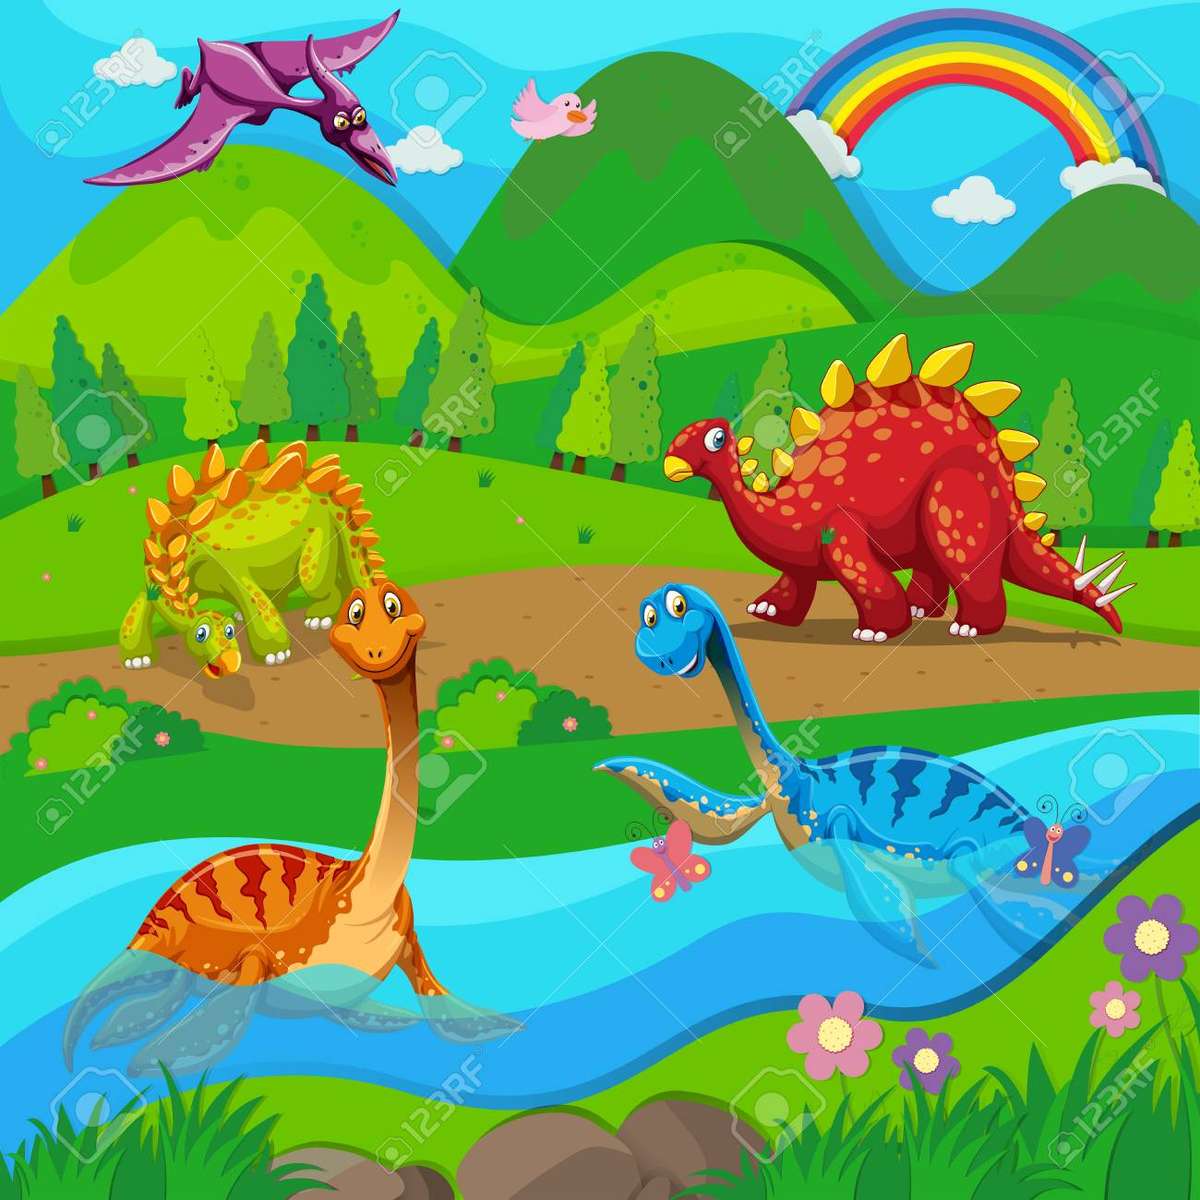 Dinossauros puzzle online